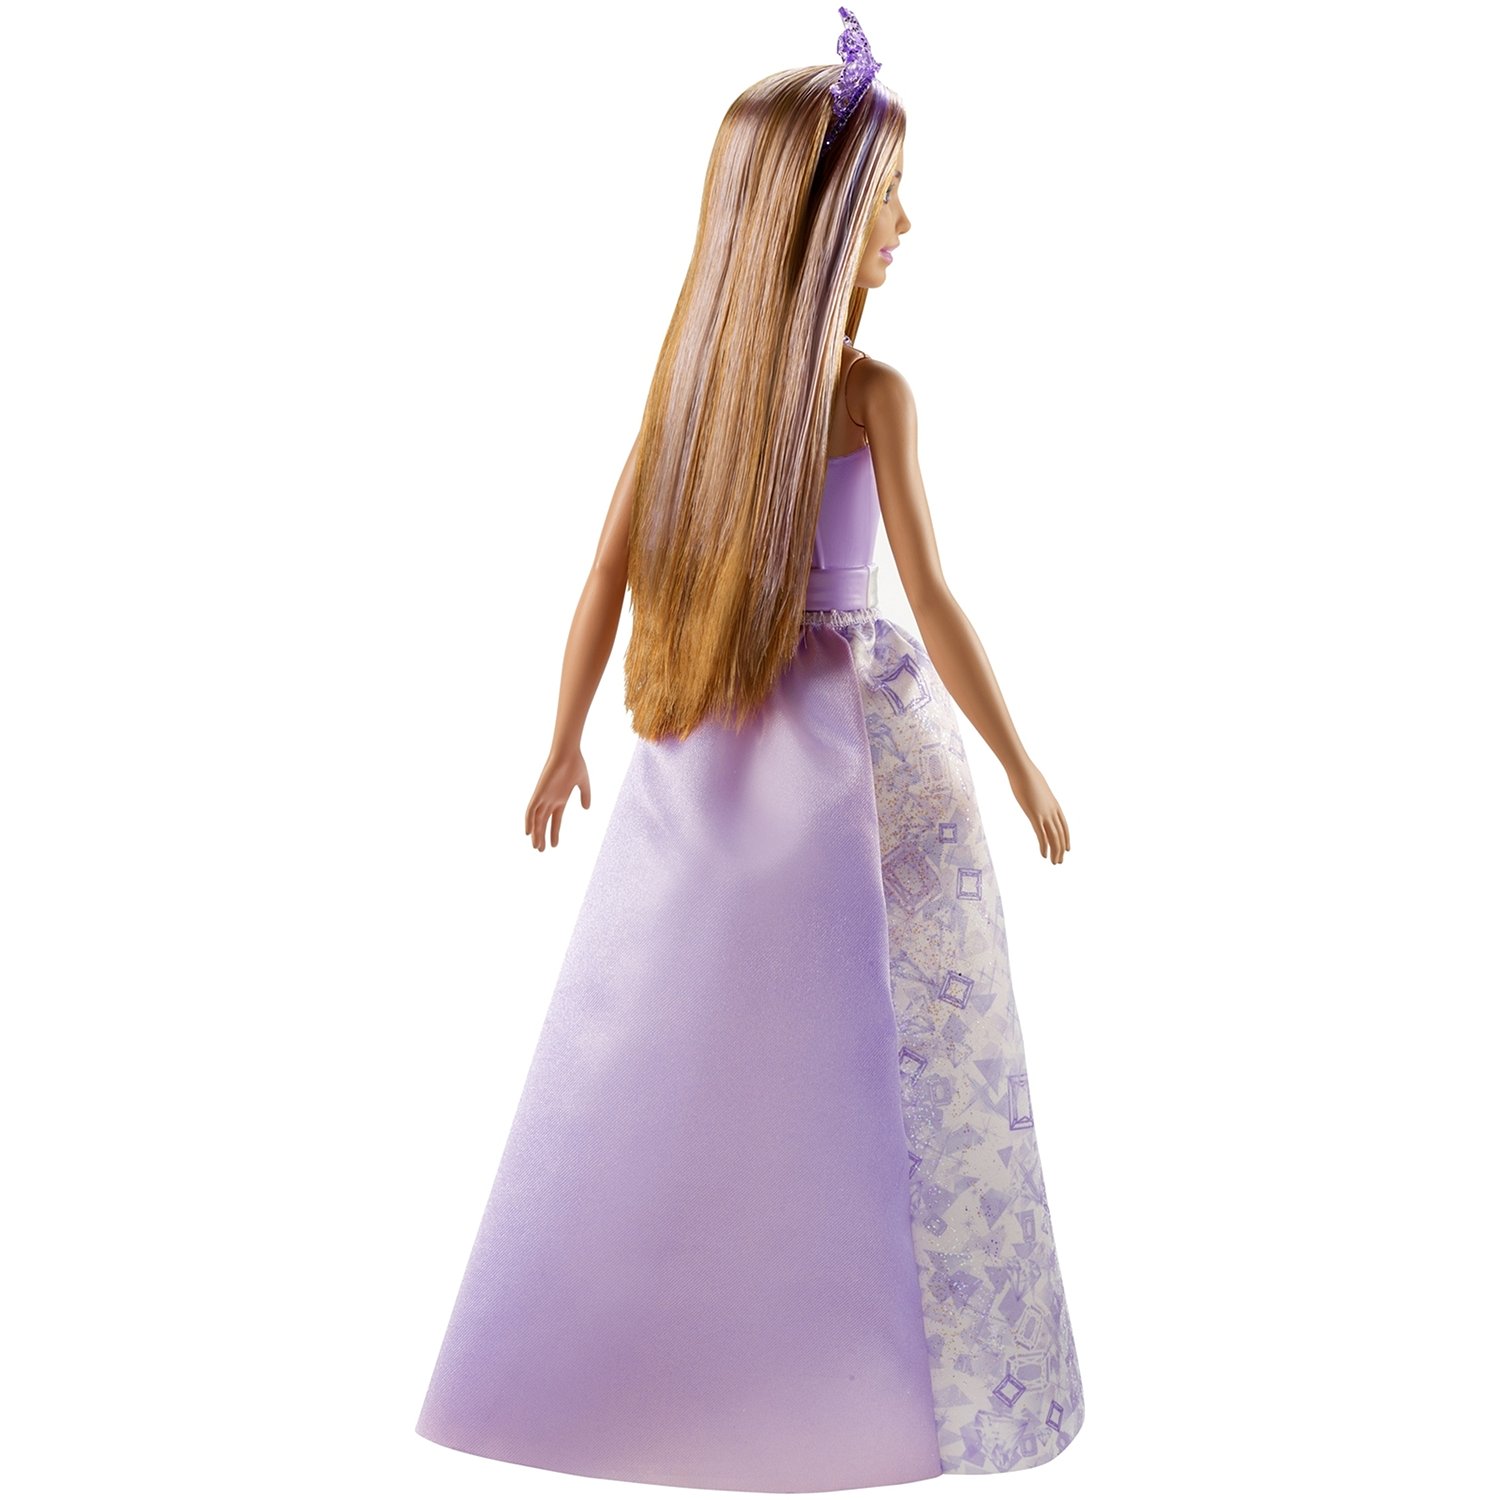 Кукла Barbie Dreamtopia Принцесса с русыми волосами, 28 см, FXT15